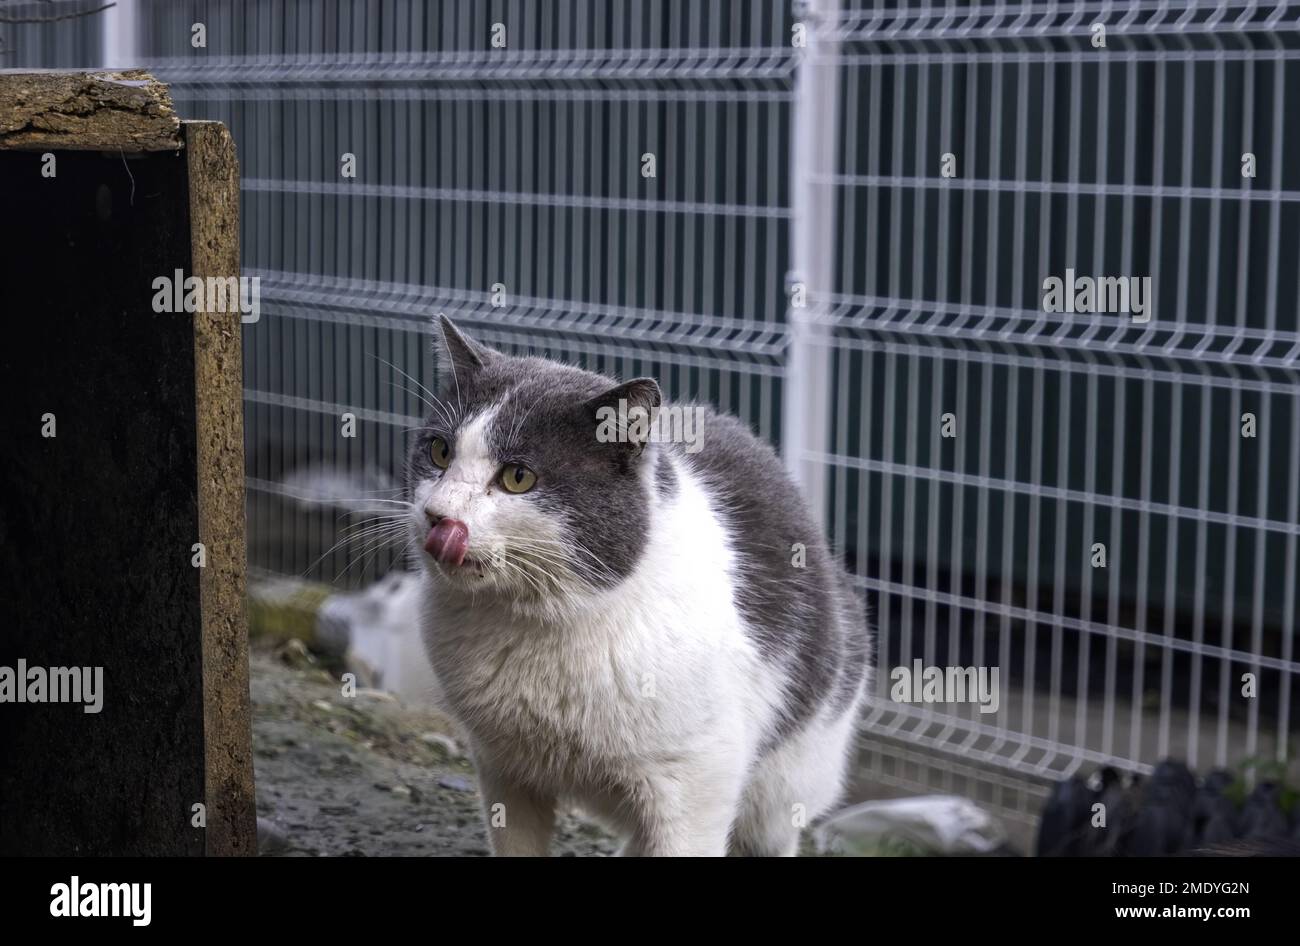 Abandoned street cats, stray animals, pets Stock Photo